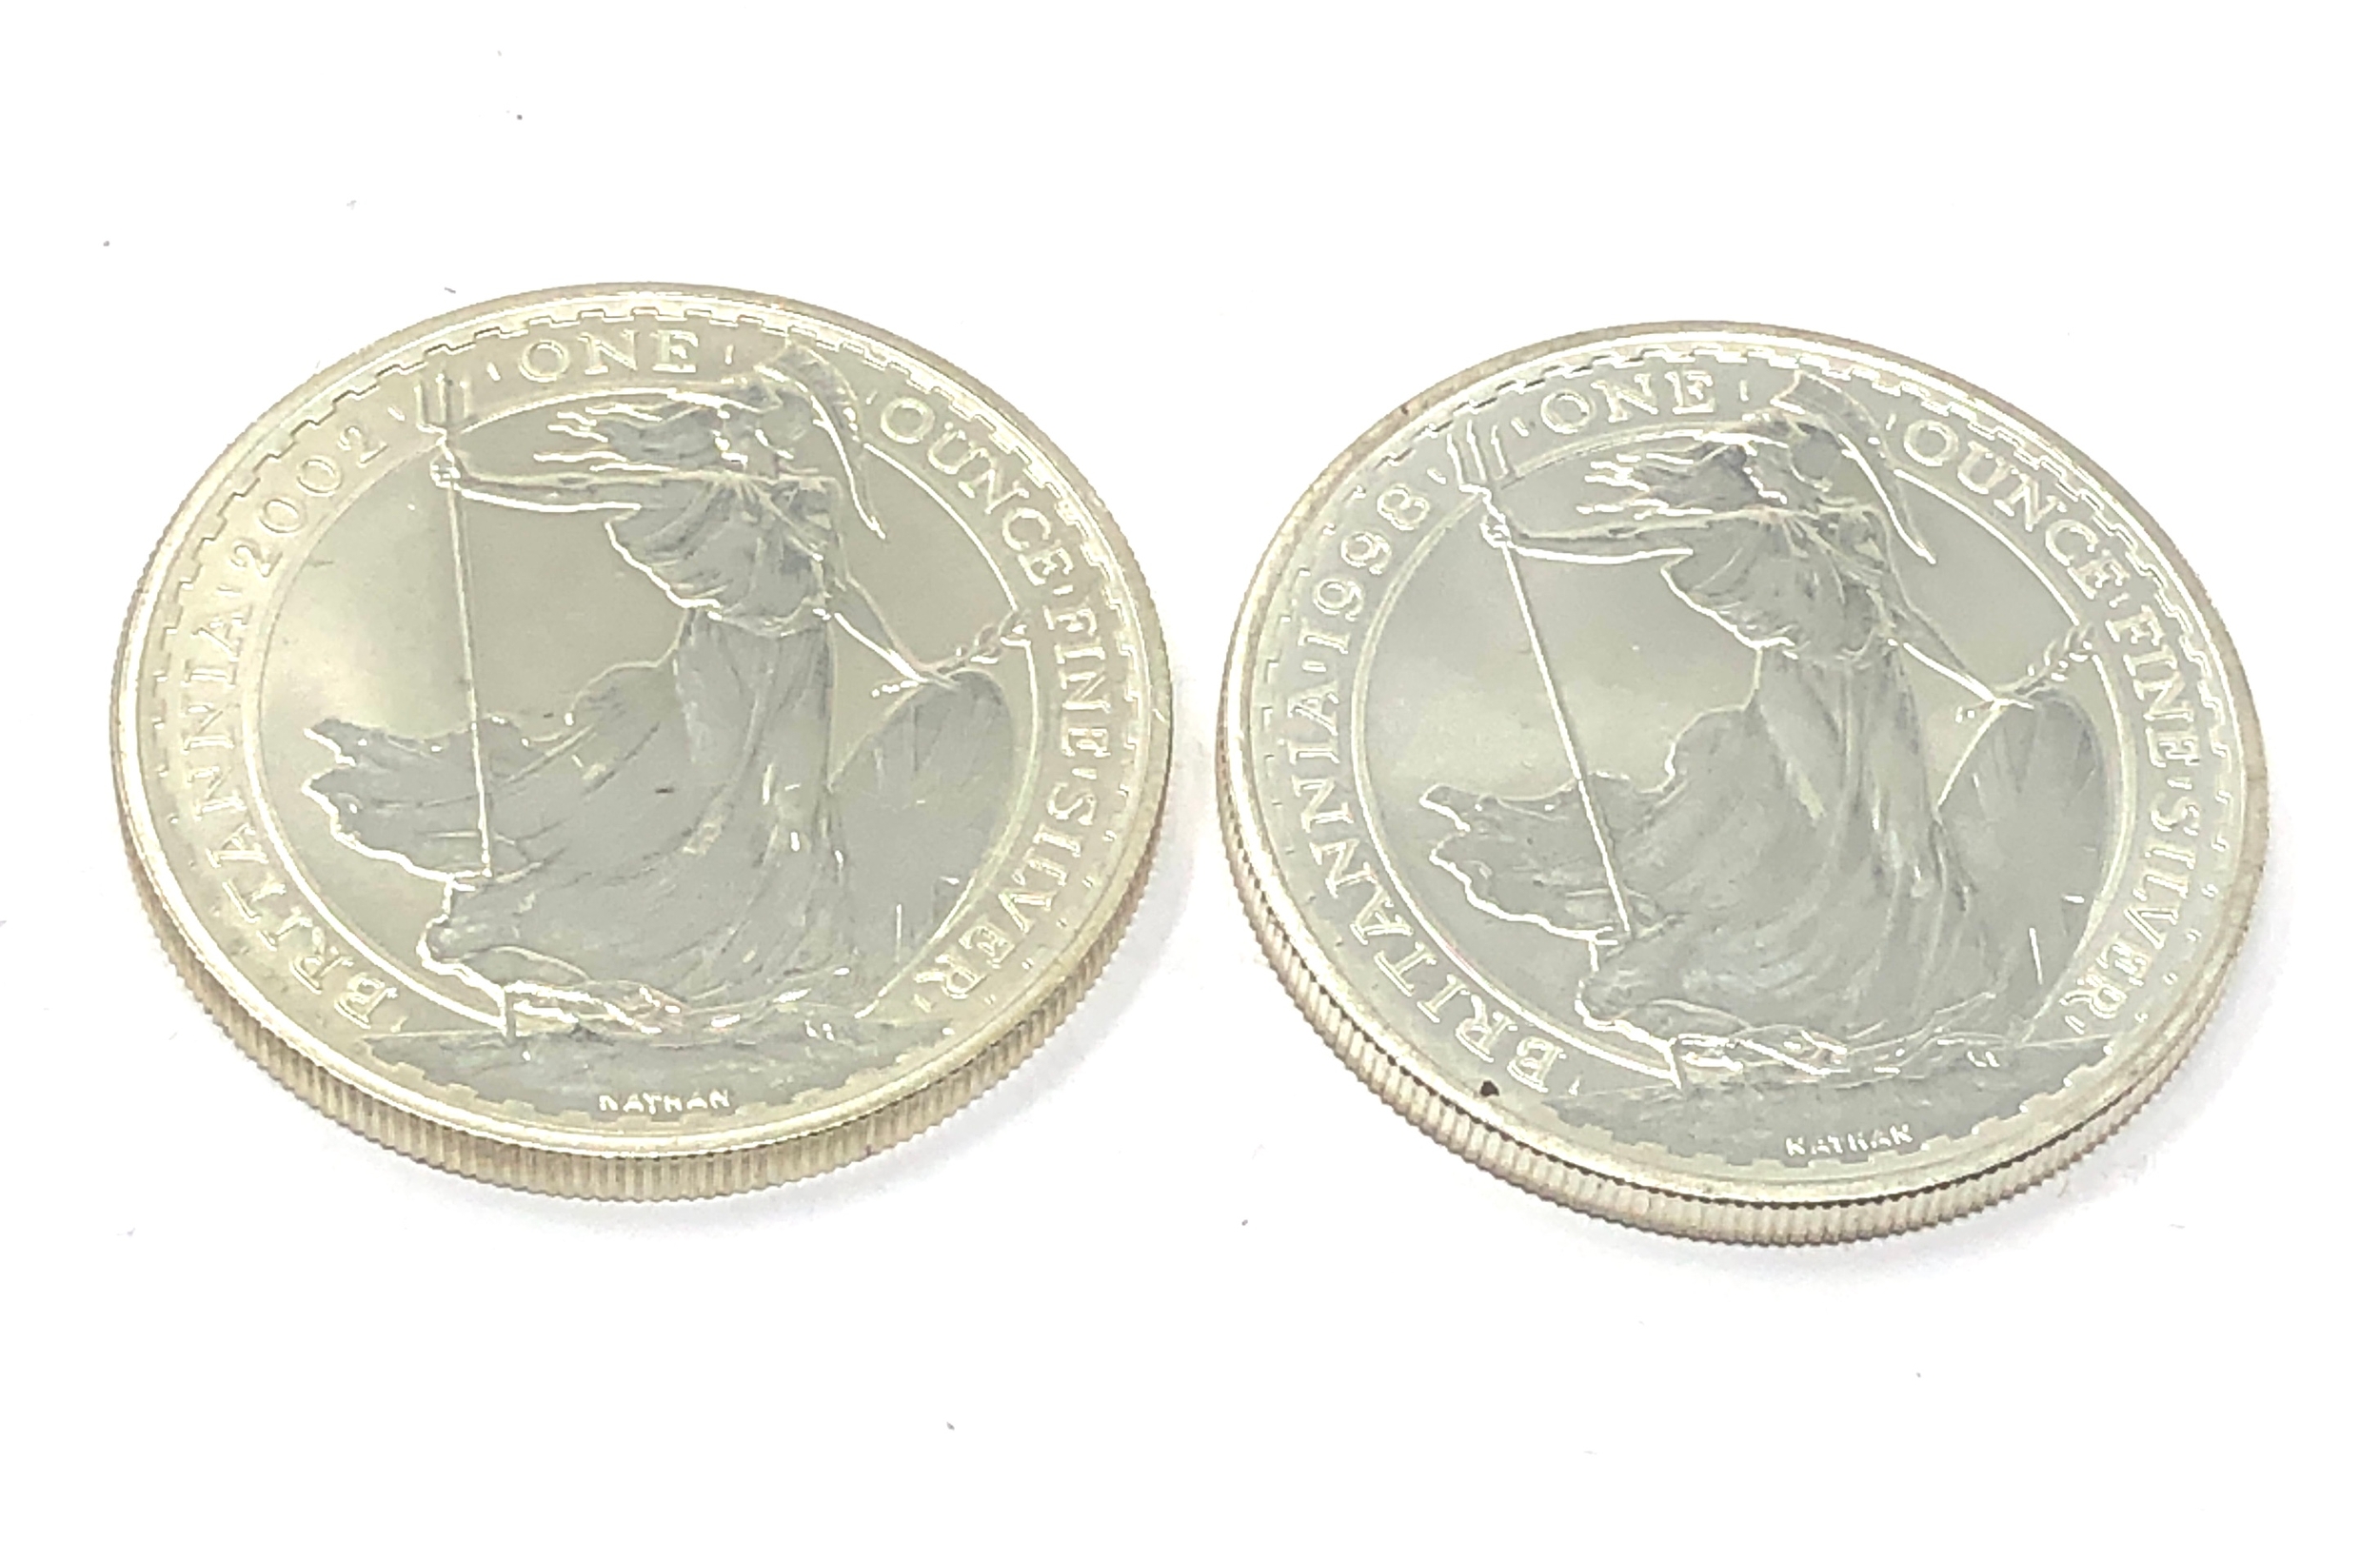 2 x 1 oz fine silver britannia 1998 & 2002